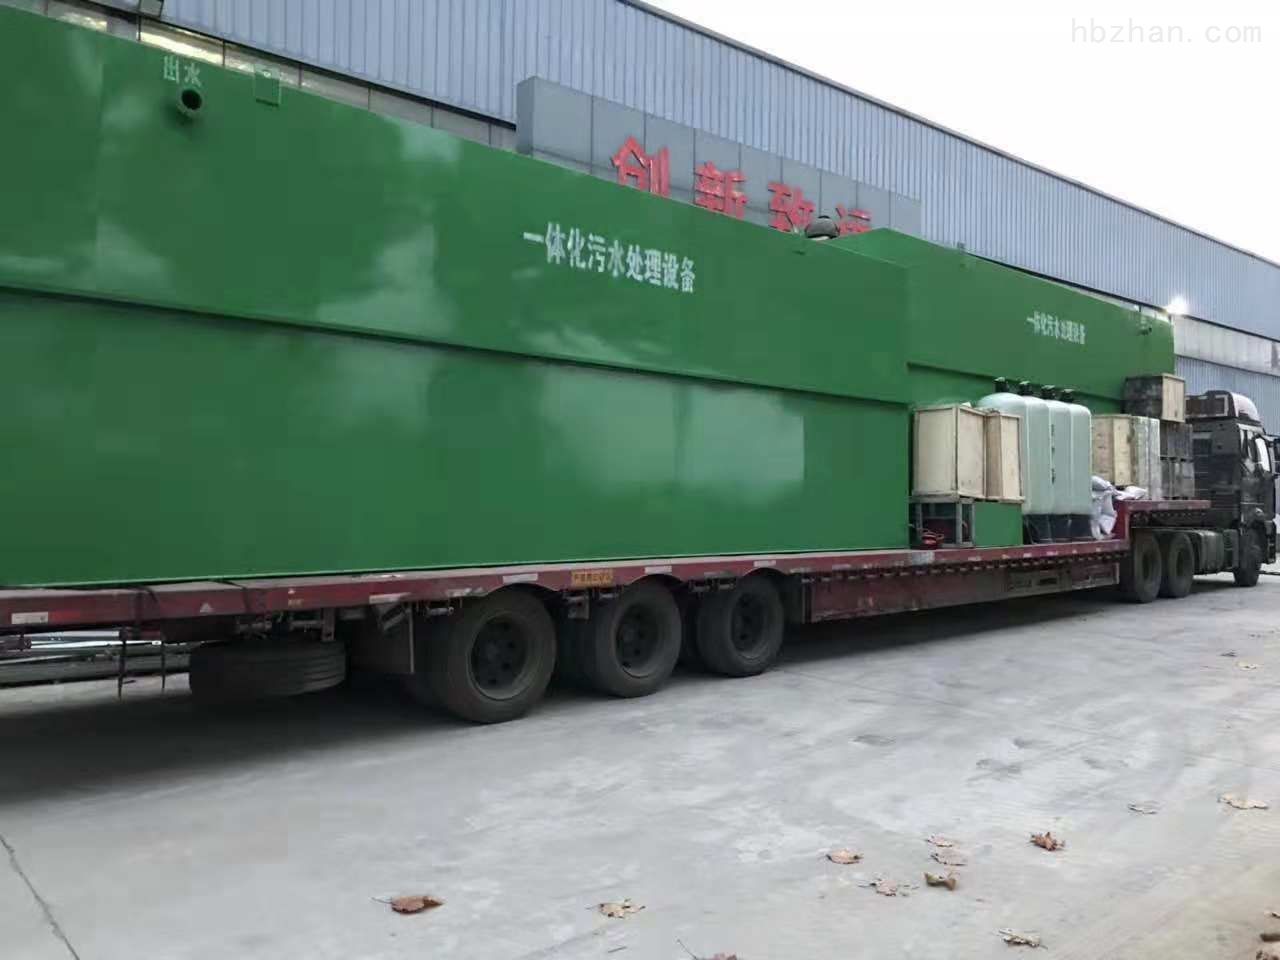 邯郸/秦皇岛工业造纸厂污水处理设备用电注意事项有哪些